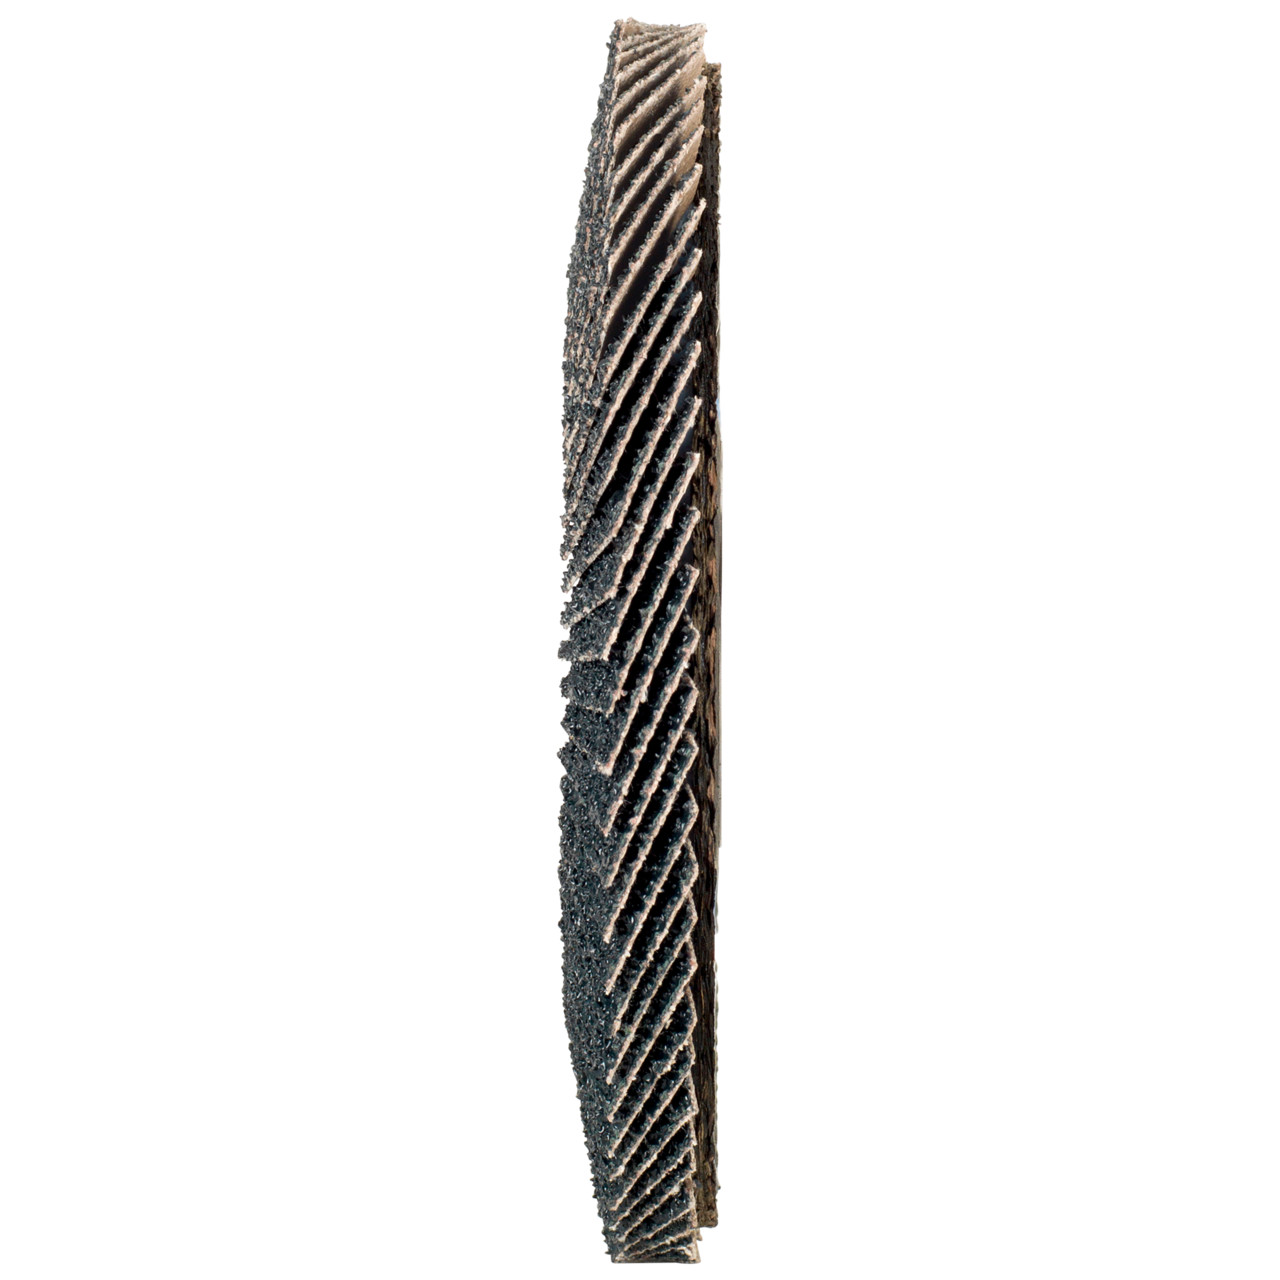 Tyrolit Arandela dentada DxH 115x22,2 2en1 para acero y acero inoxidable, P80, forma: 27A - versión desplazada (versión con cuerpo de soporte de fibra de vidrio), Art. 668649